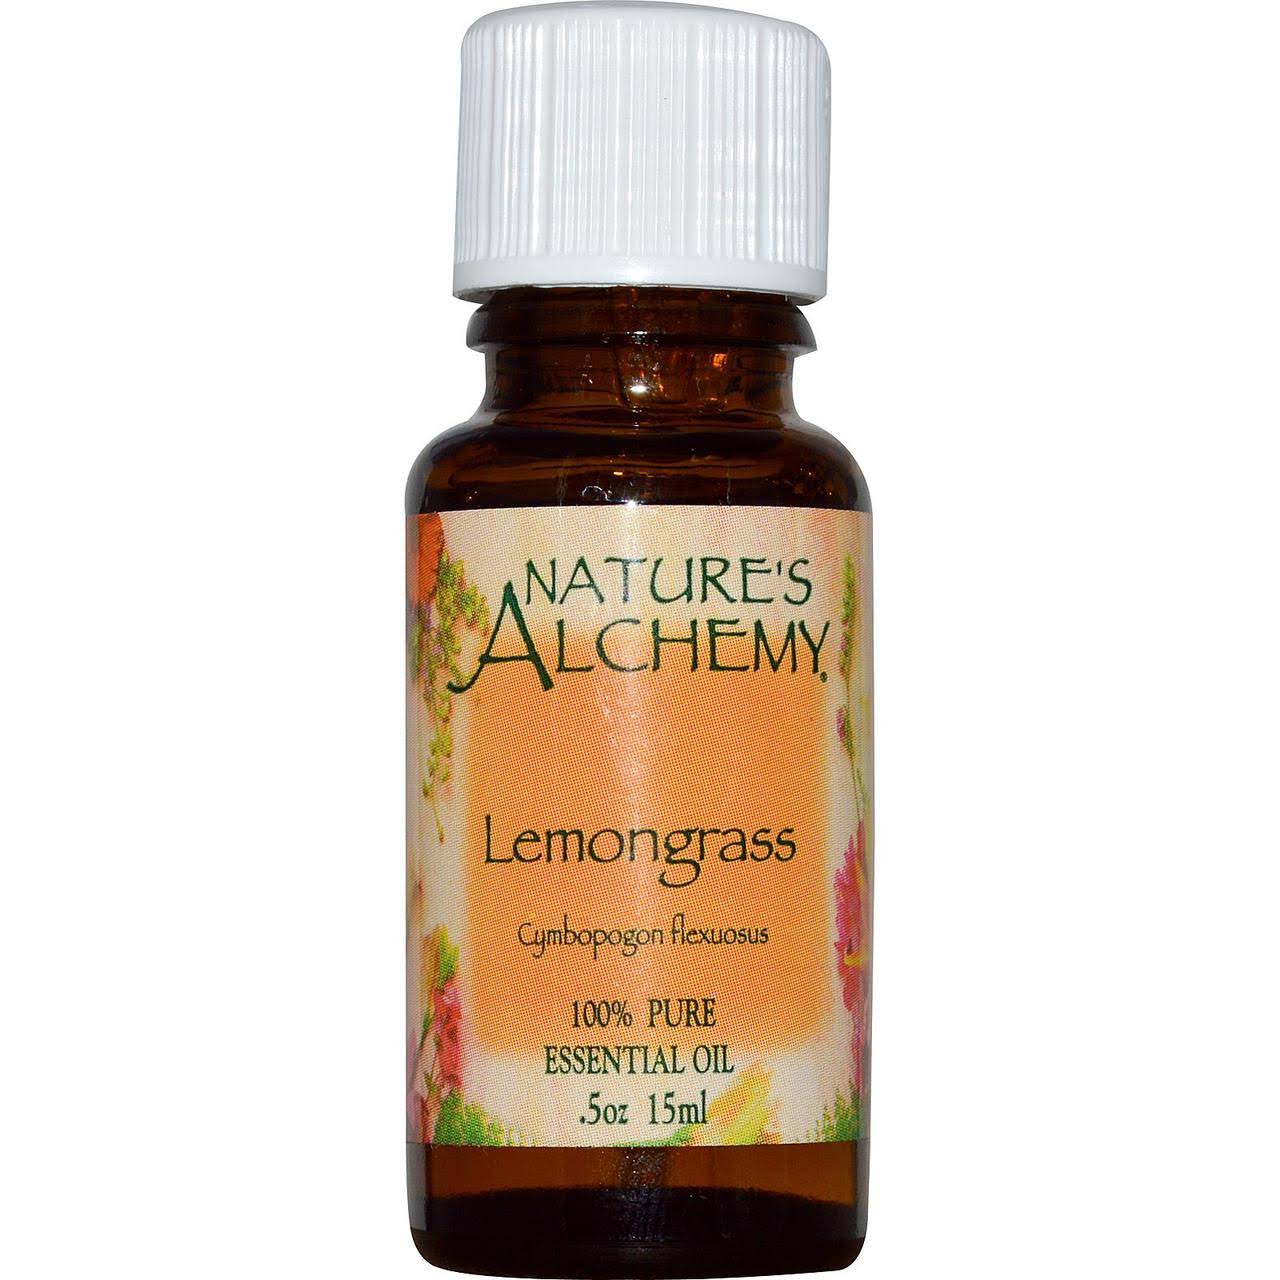 Nature's Alchemy 100% Pure Essential Oil - Lemongrass, 0.5 fl oz